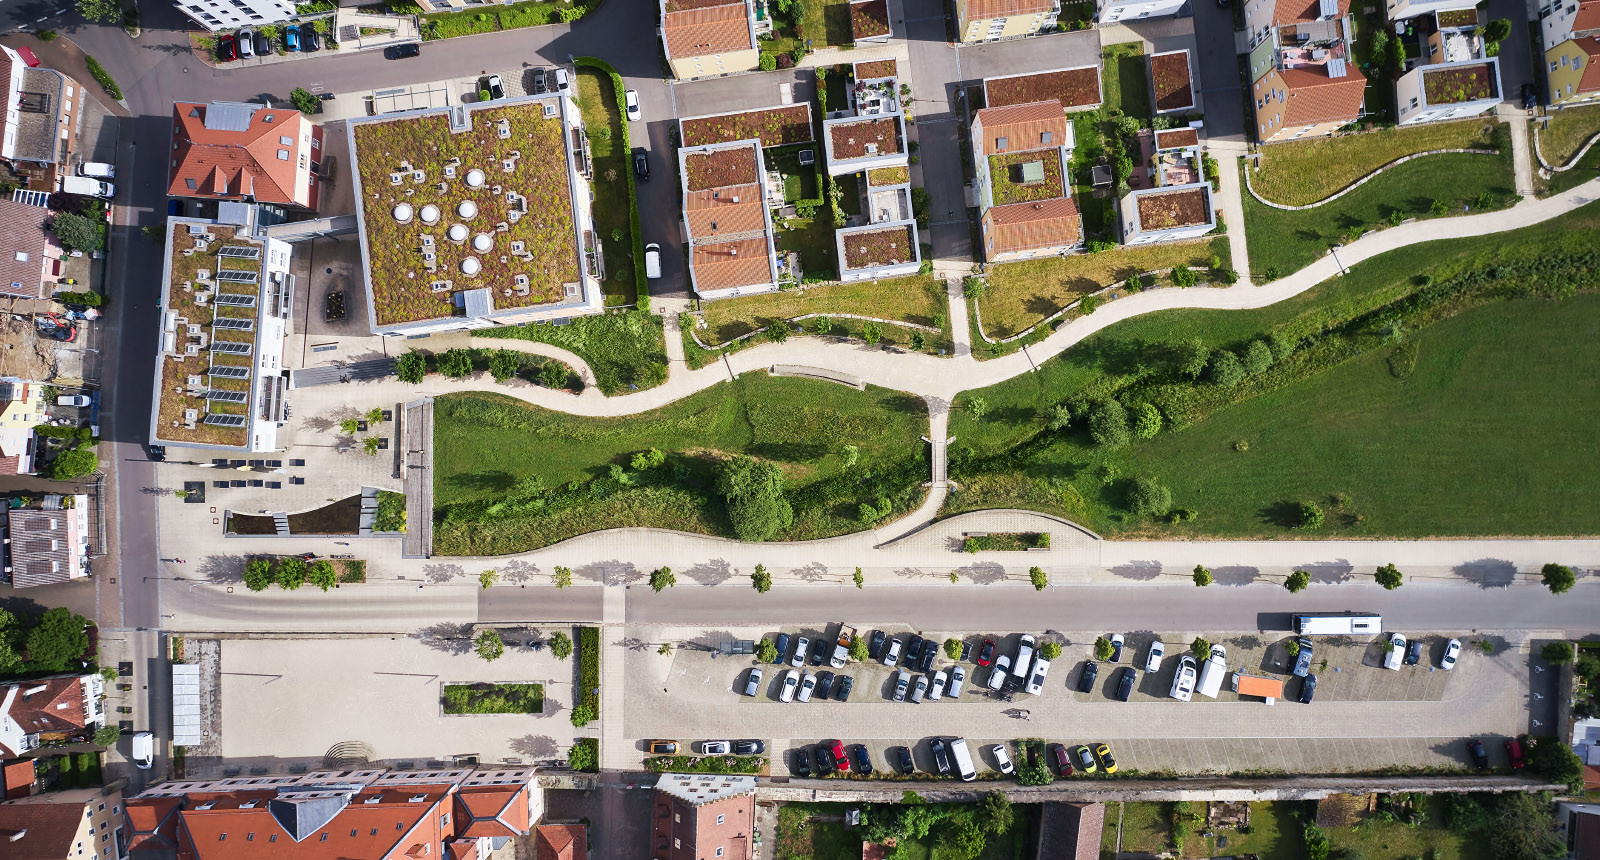 Luftbildaufnahme, Top-down view Parkanlage bei einem Schloß